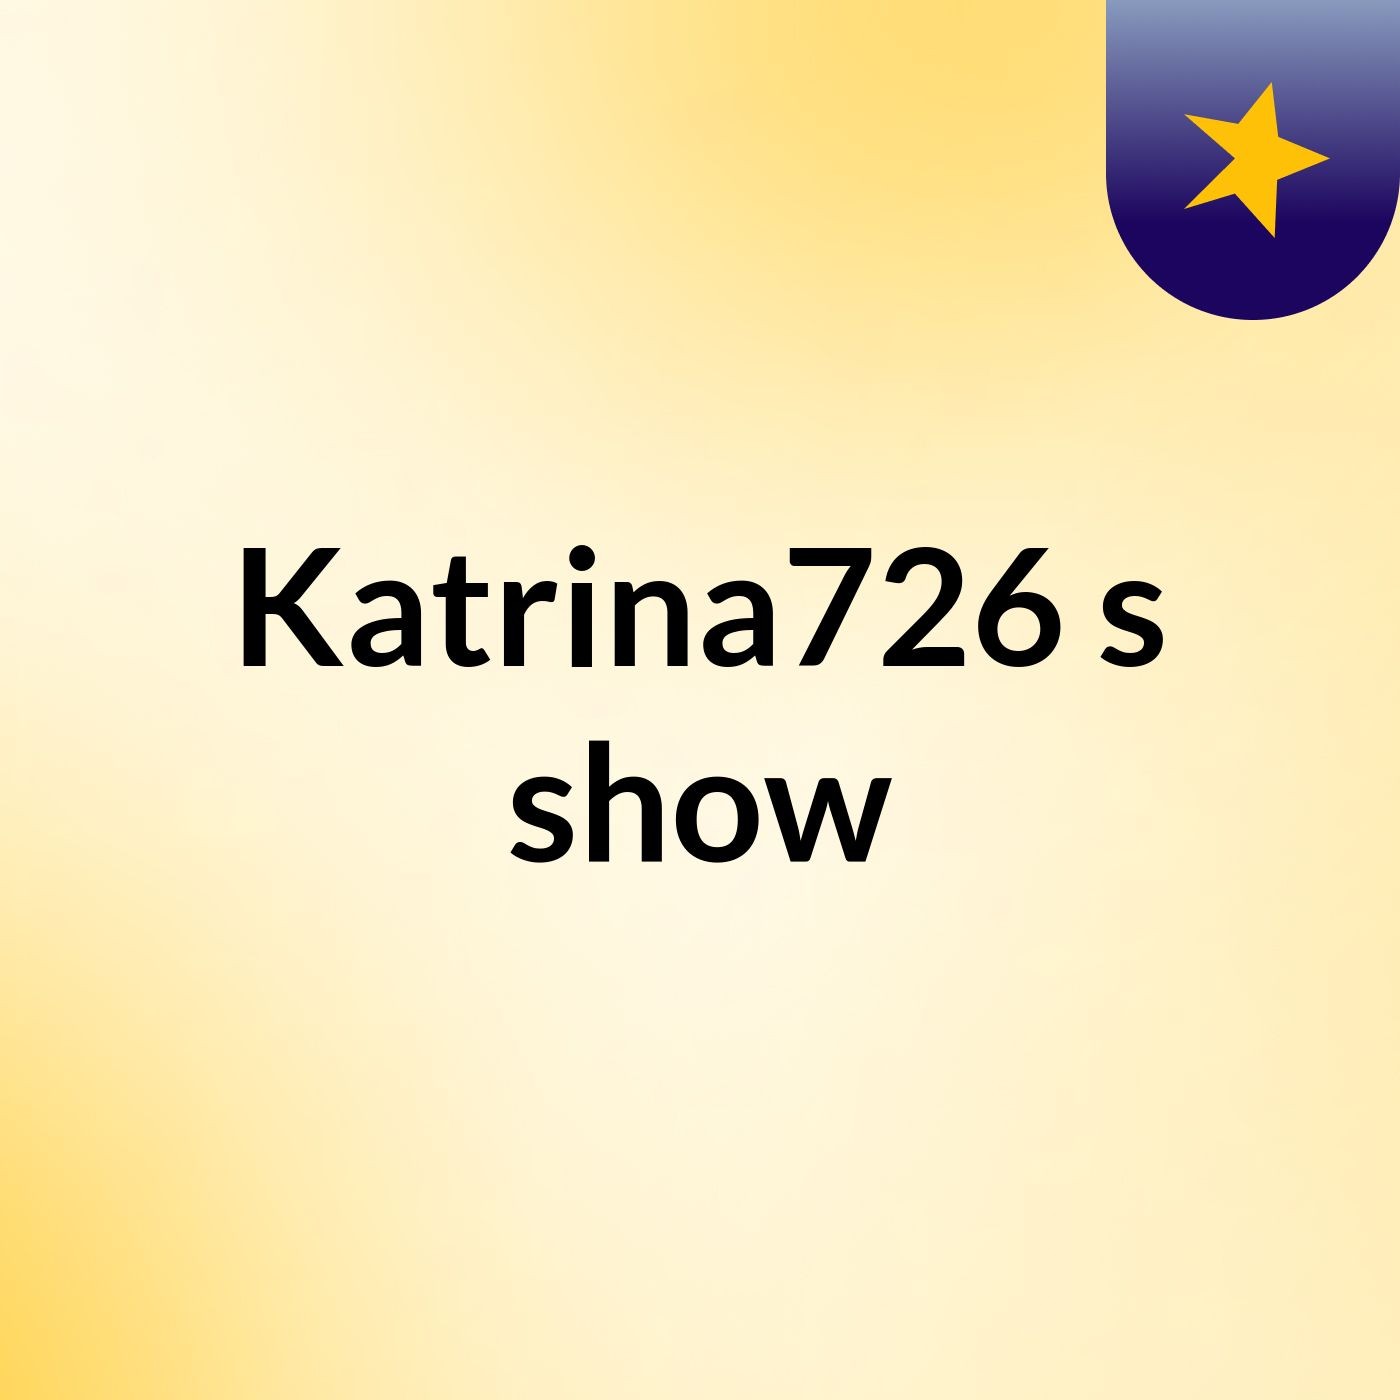 Katrina726's show